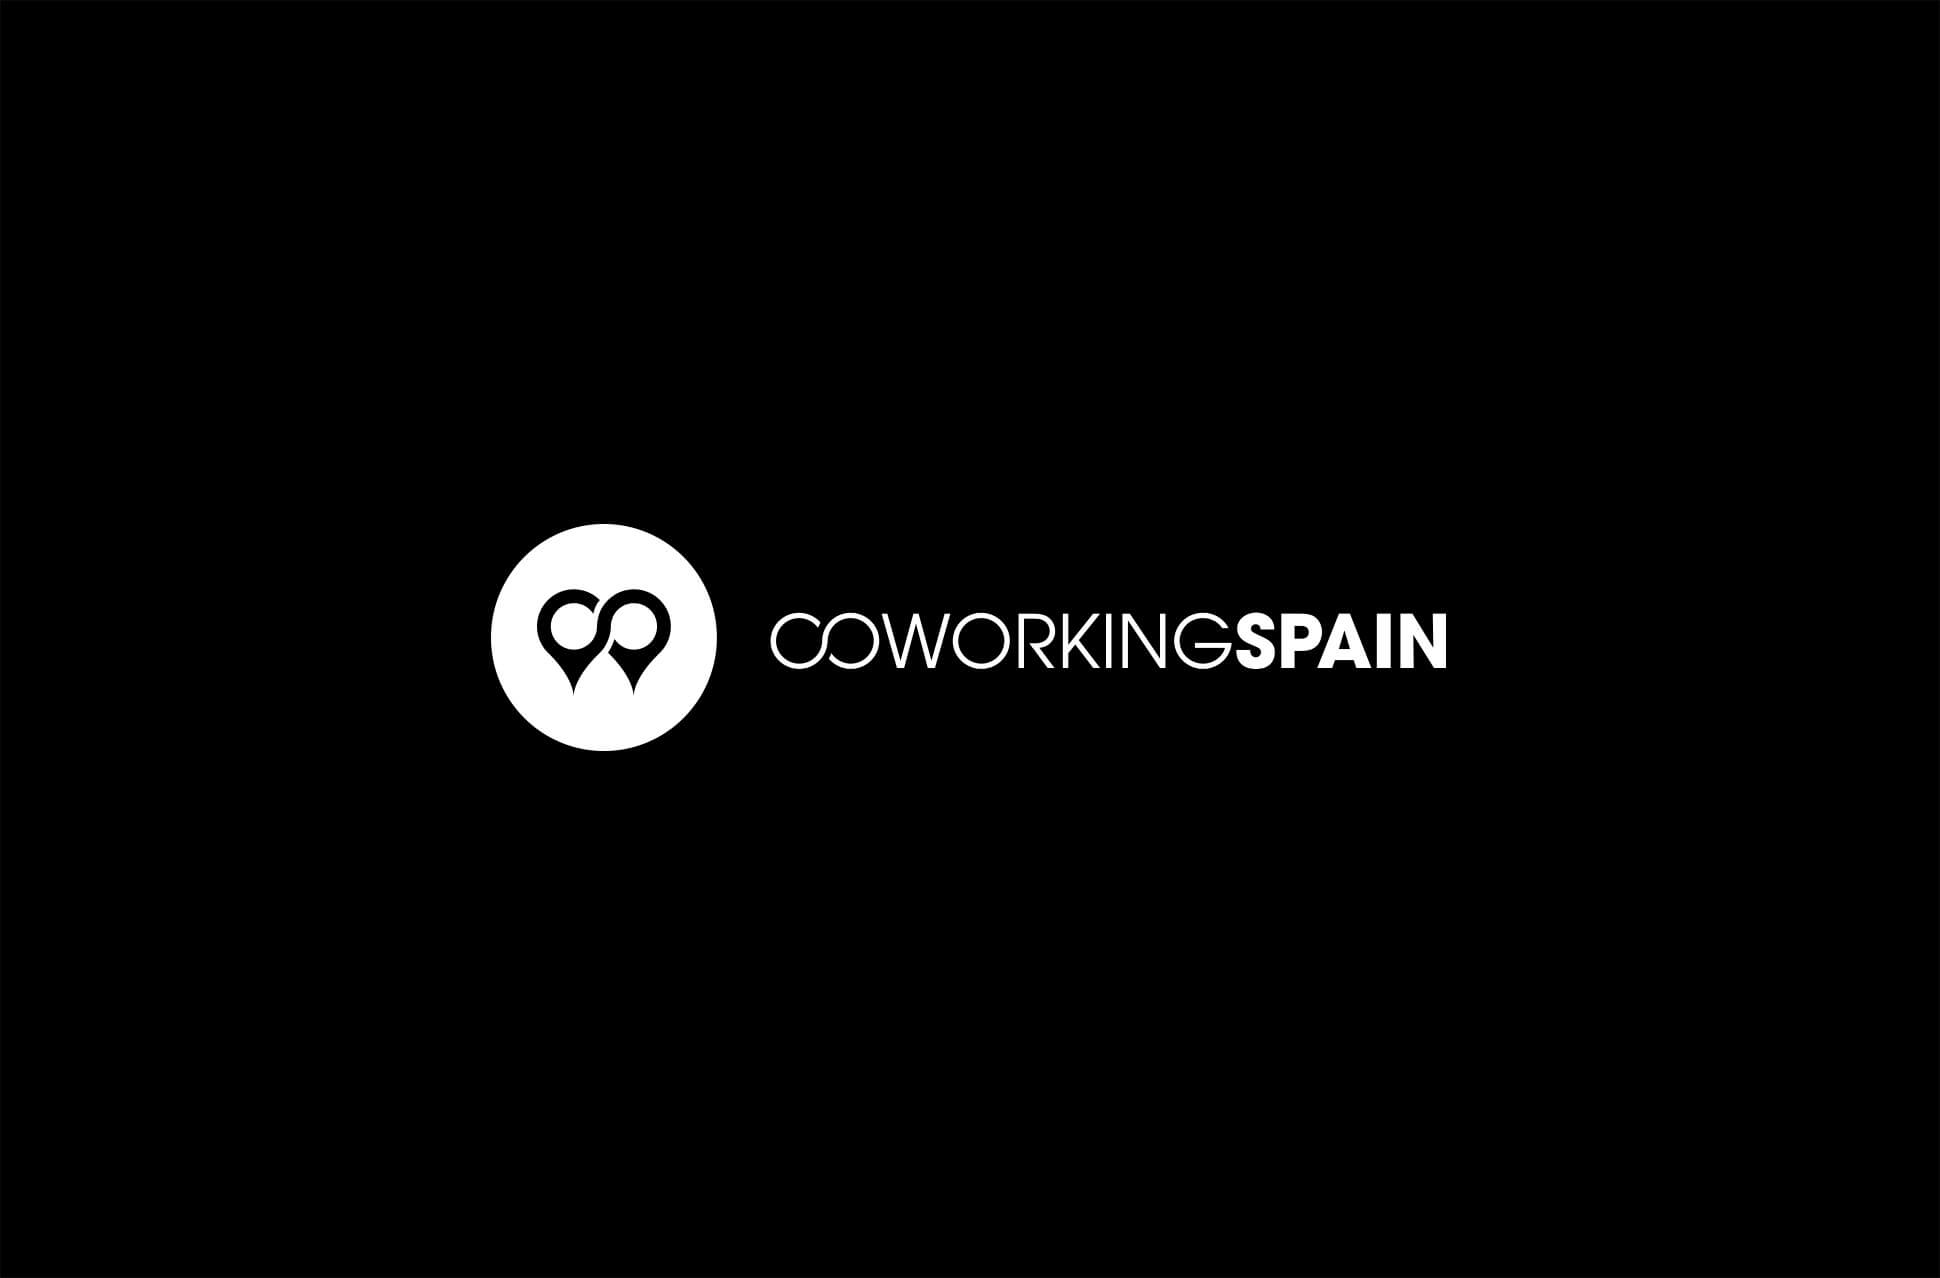 Logotipo de Coworking Spain sobre fondo negro